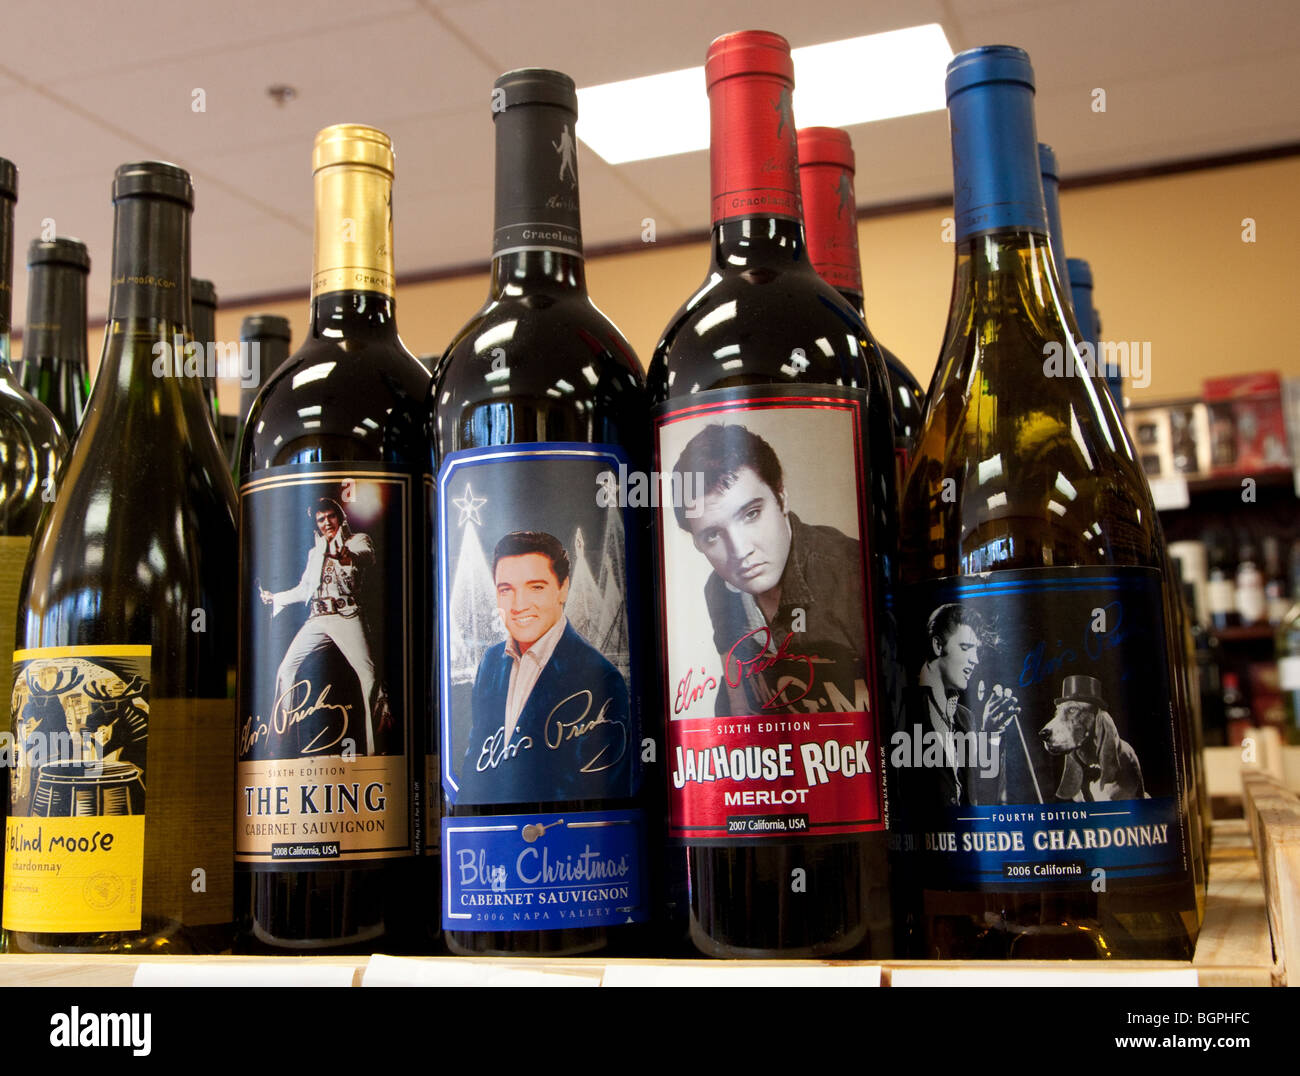 Elvis Presley wines. Stock Photo